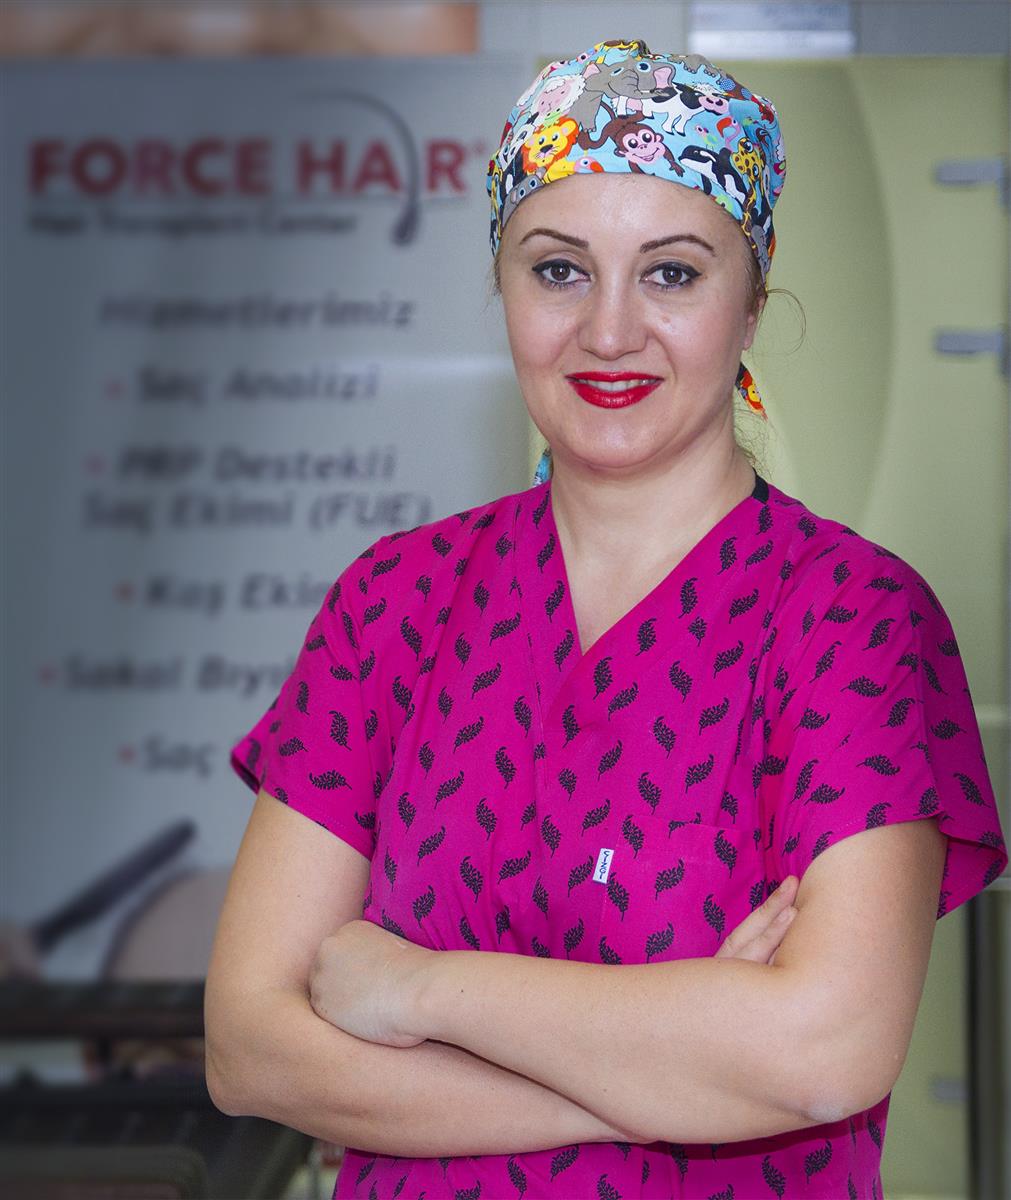 Force Hair Transplant - مركز فورس لزراعة الشعر